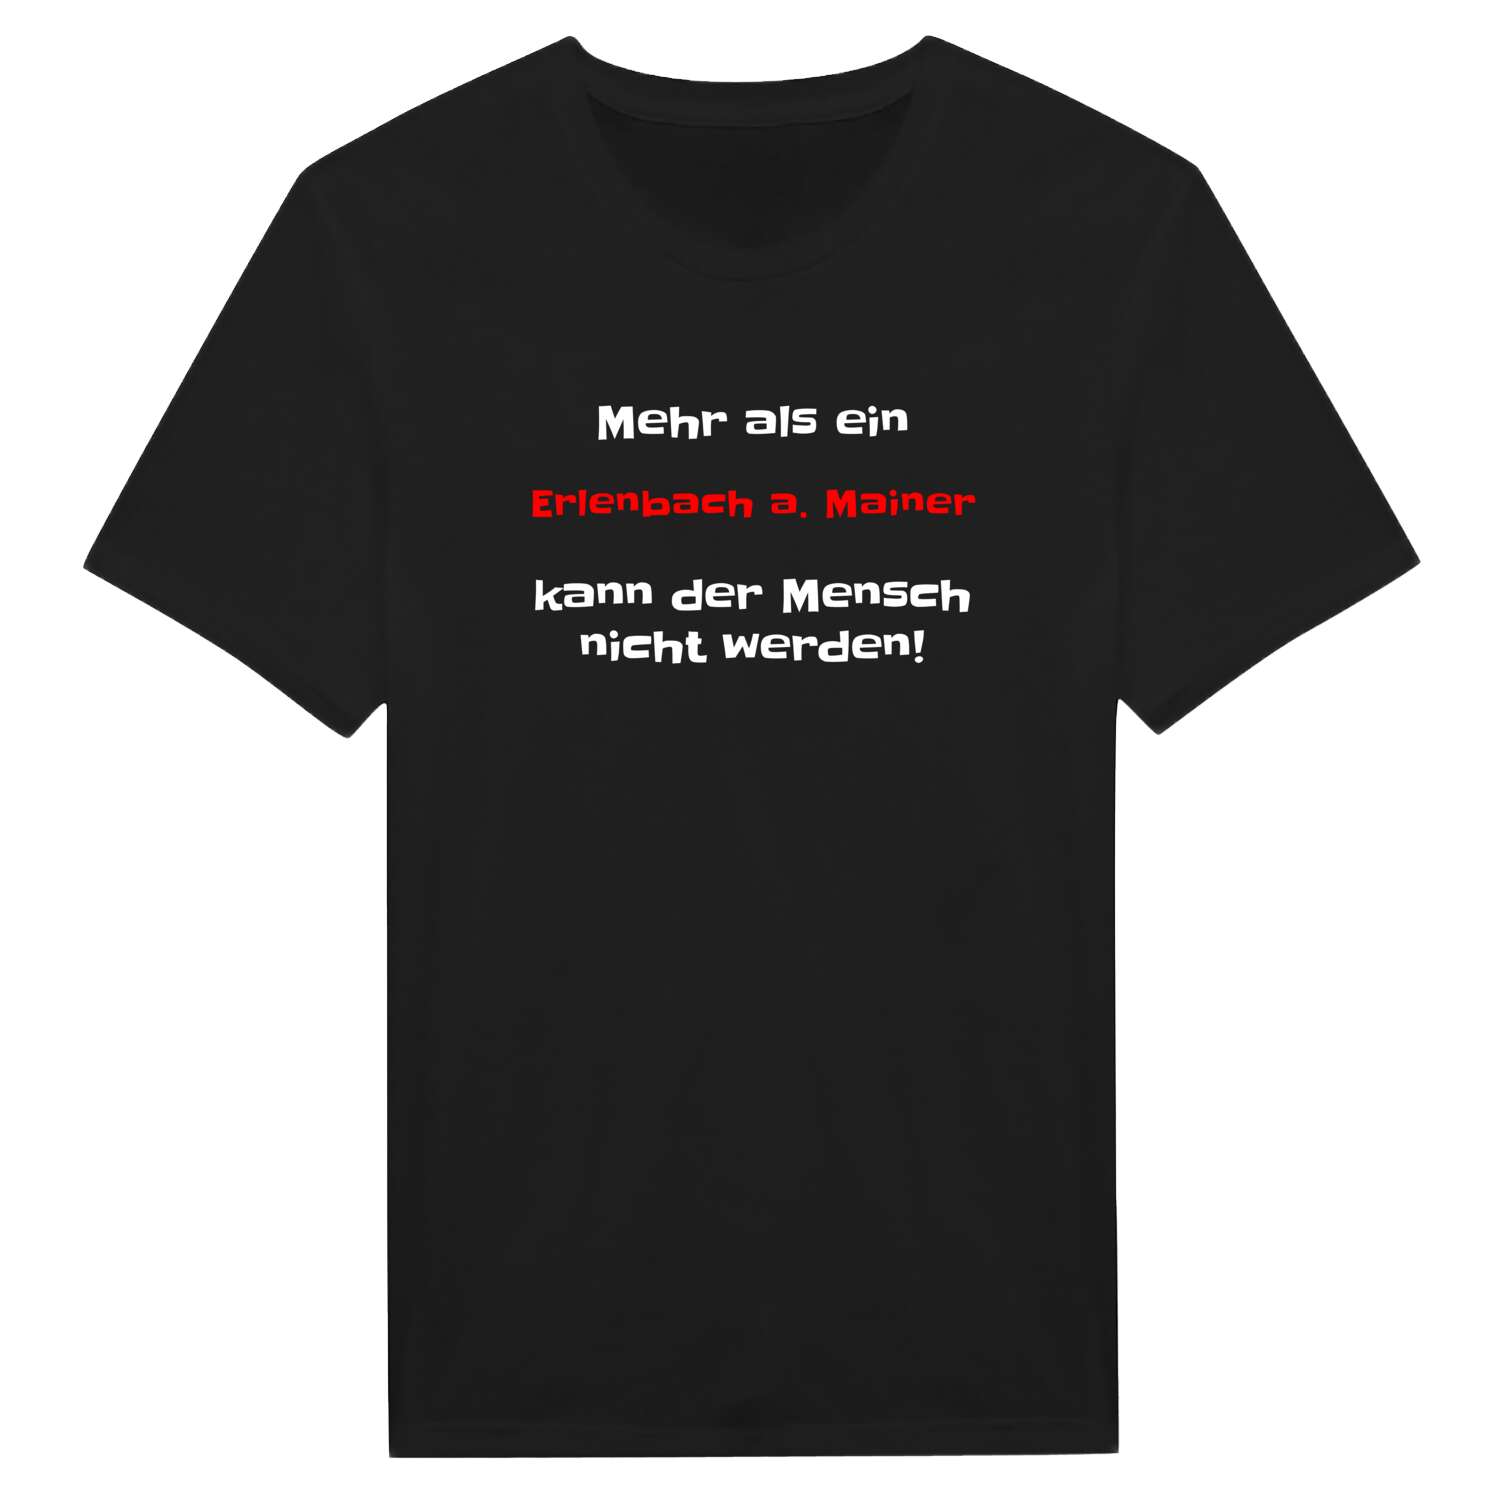 Erlenbach a. Main T-Shirt »Mehr als ein«